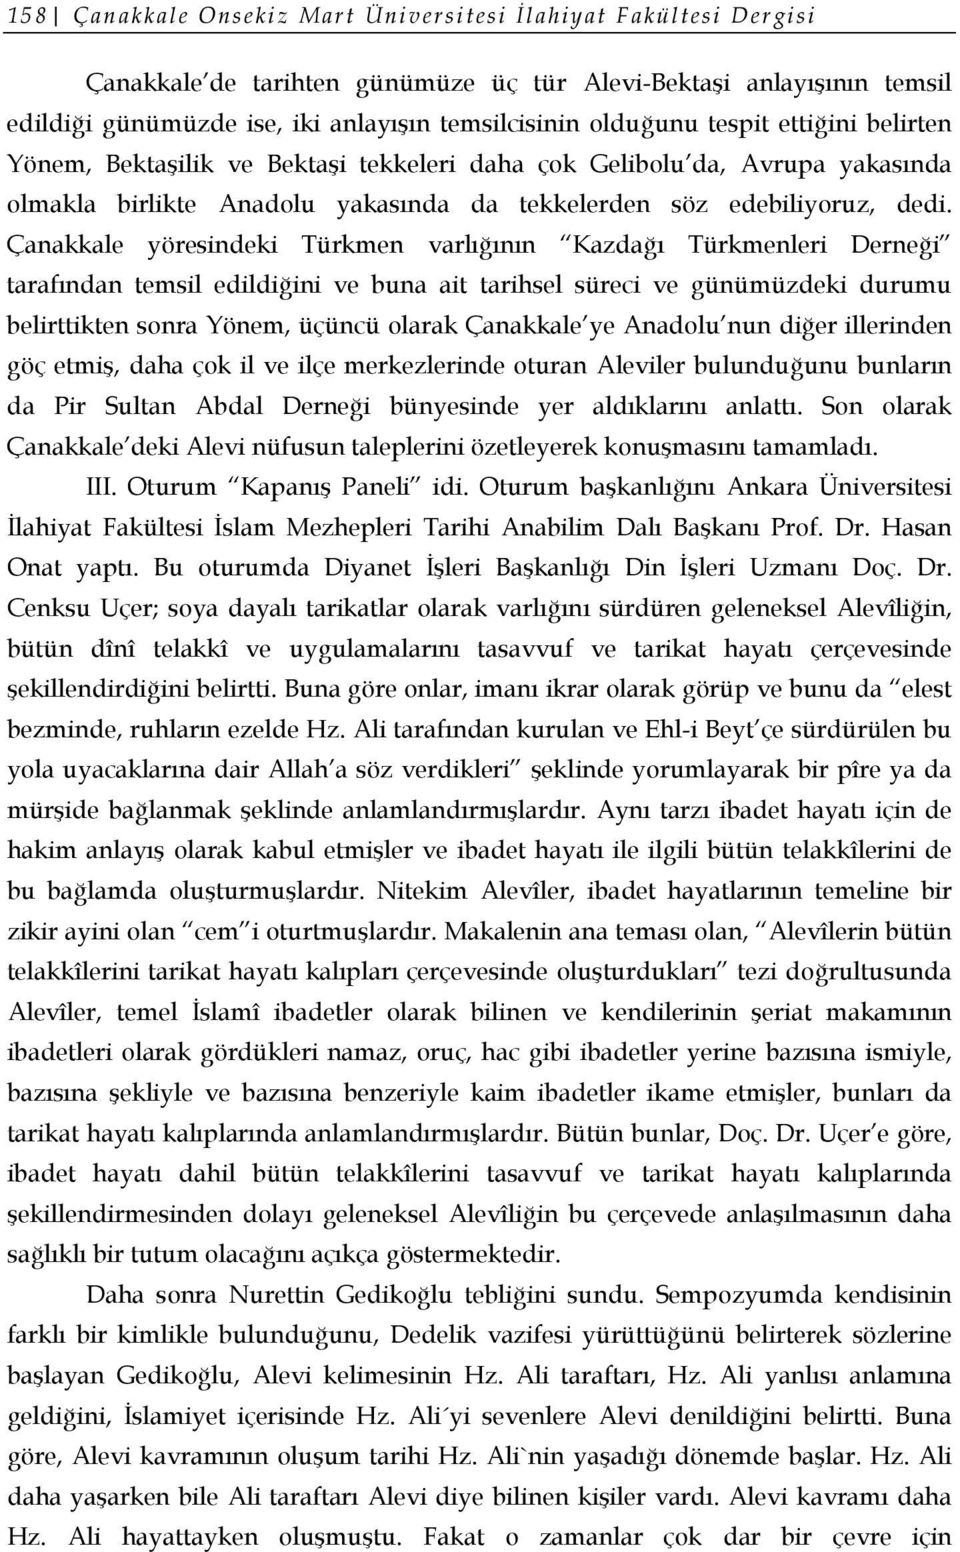 Çanakkale yöresindeki Türkmen varlığının Kazdağı Türkmenleri Derneği tarafından temsil edildiğini ve buna ait tarihsel süreci ve günümüzdeki durumu belirttikten sonra Yönem, üçüncü olarak Çanakkale